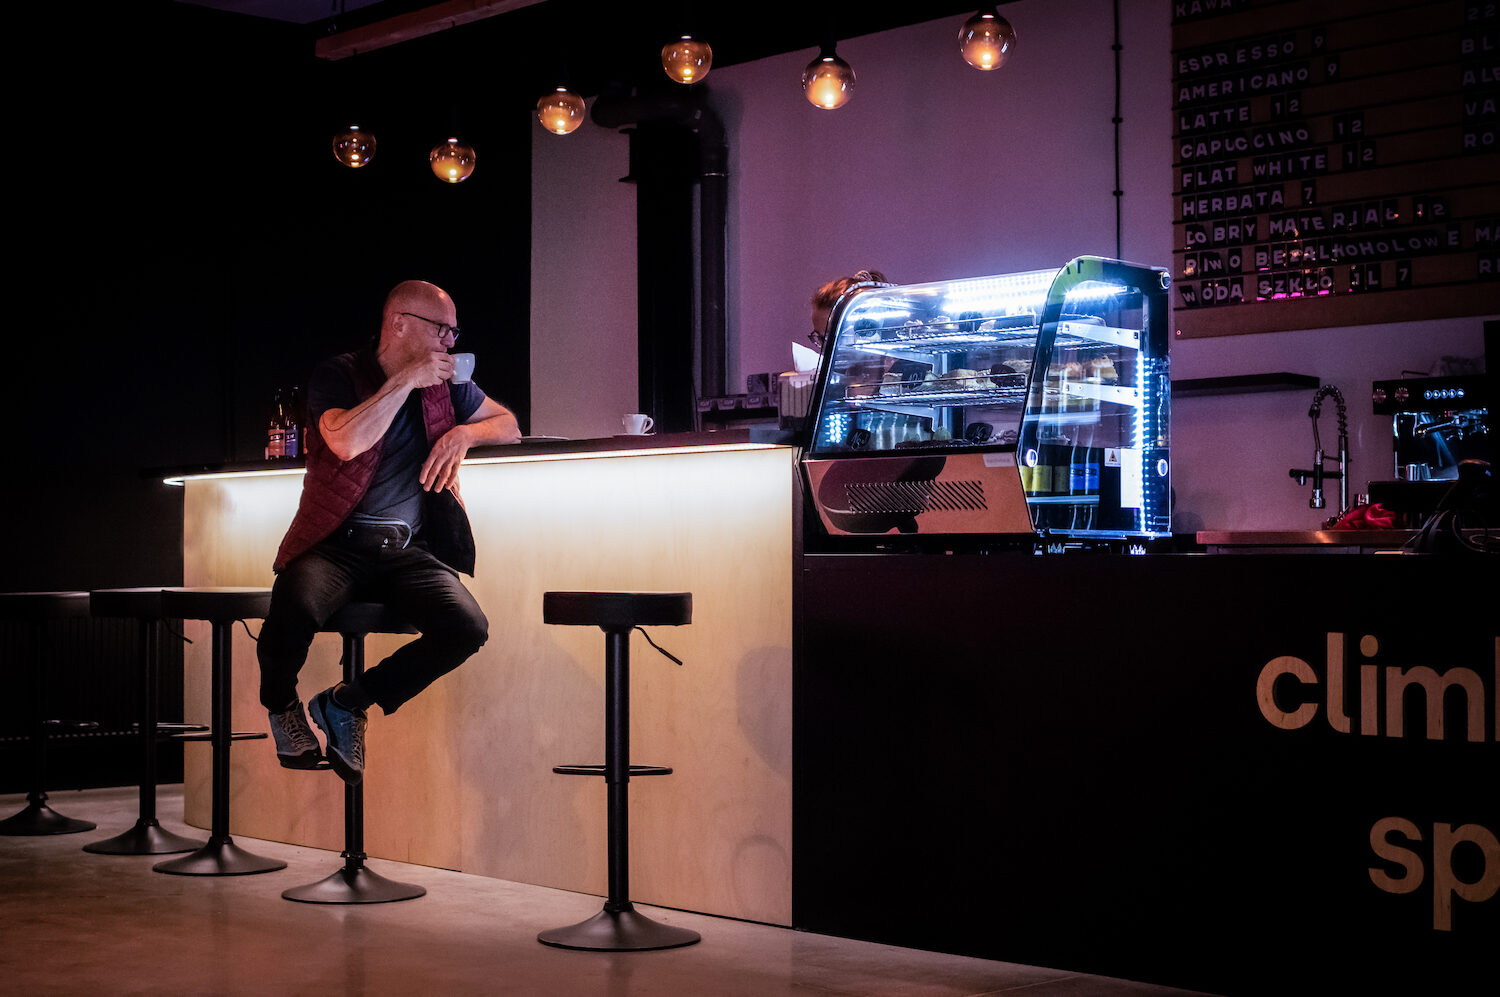 Zdjęcie pokazujące mężczyznę pijącego kawę w kawiarni Flow Climbing Space.